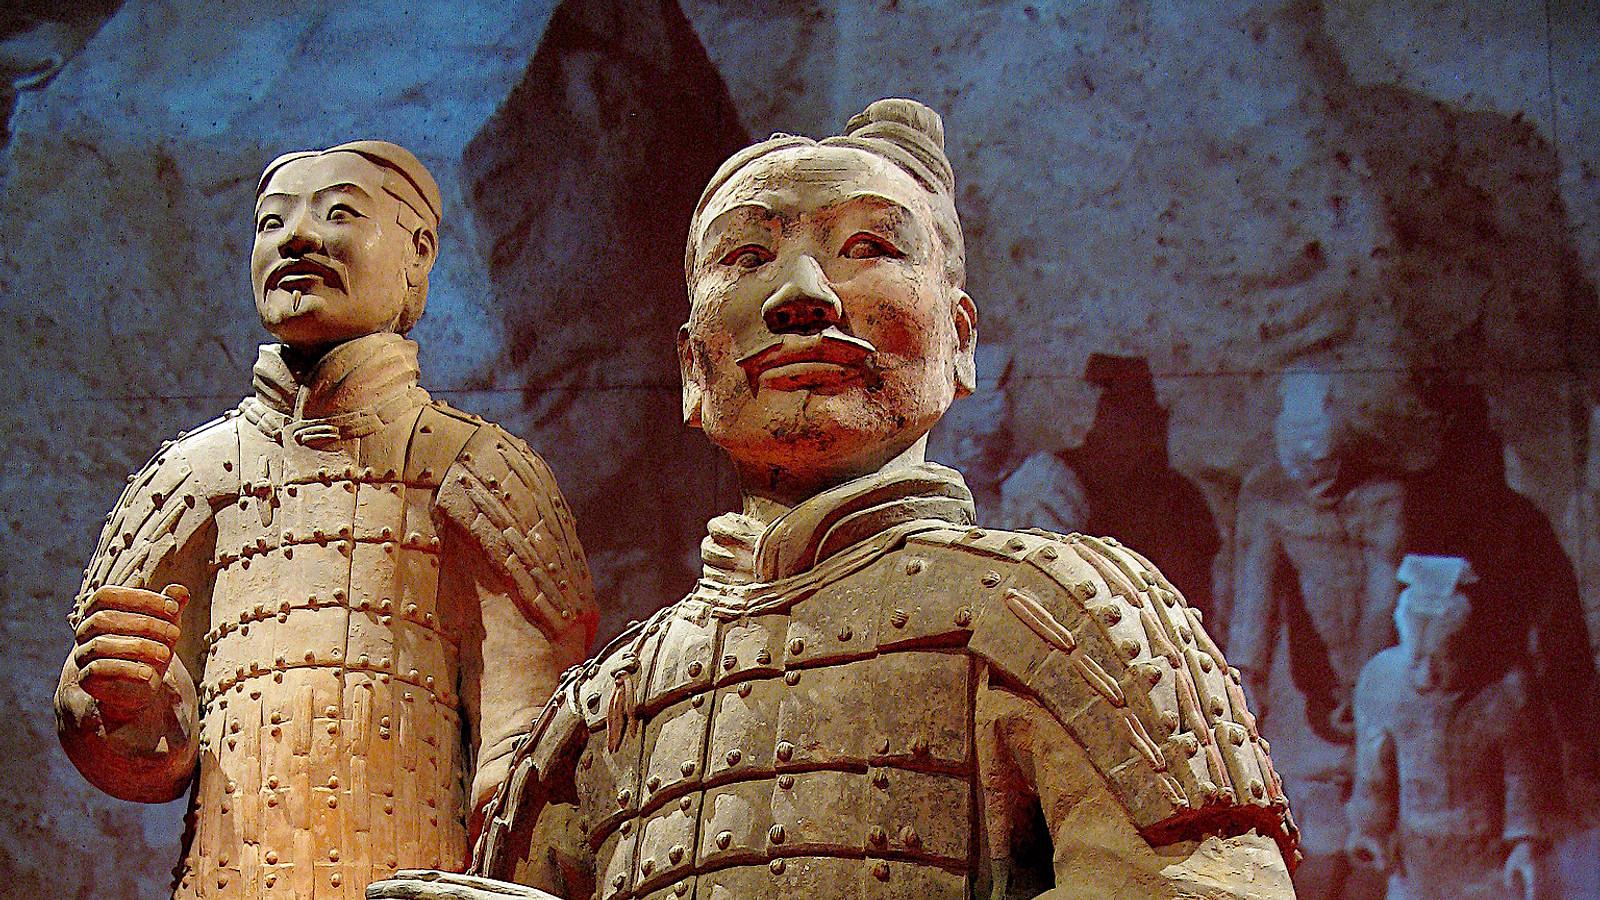 Han dynasty armour